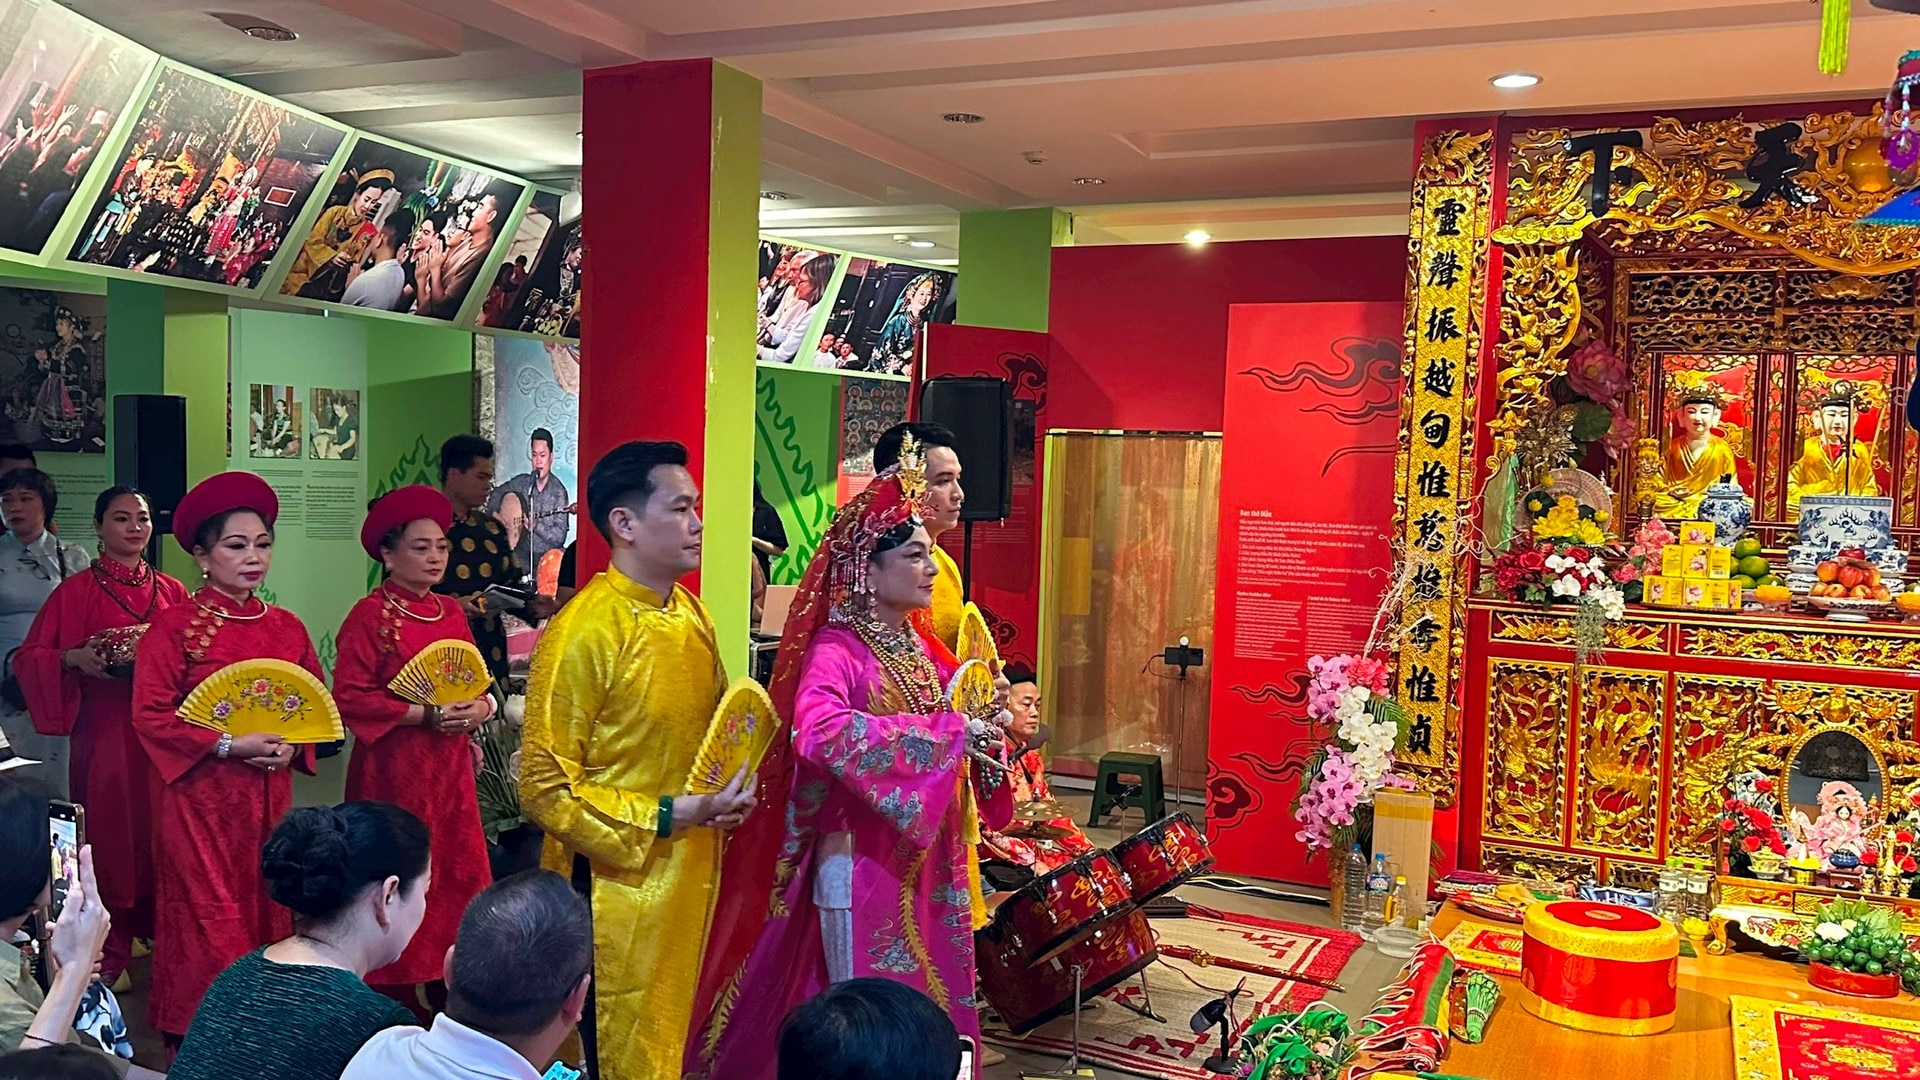 Trải nghiệm văn hóa Tín ngưỡng thờ Mẫu tại Bảo tàng Phụ nữ Việt Nam - Ảnh 5.